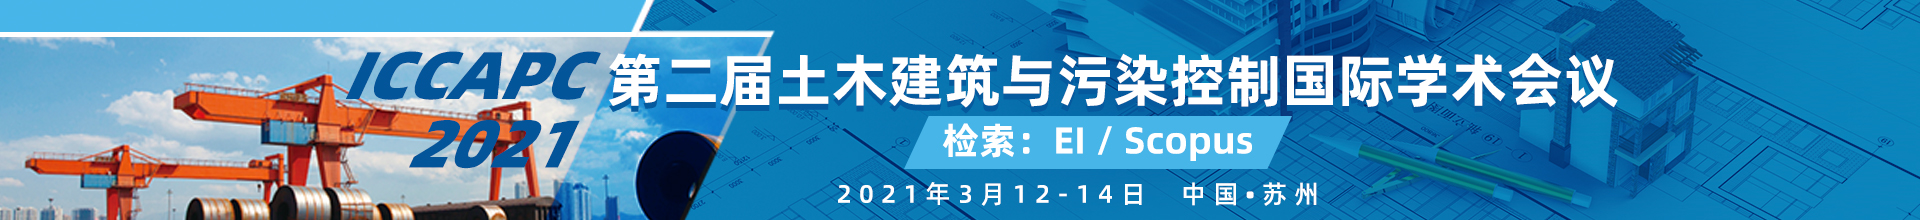 ICCAPC 2021-学术会议云-何霞丽-0927.jpg